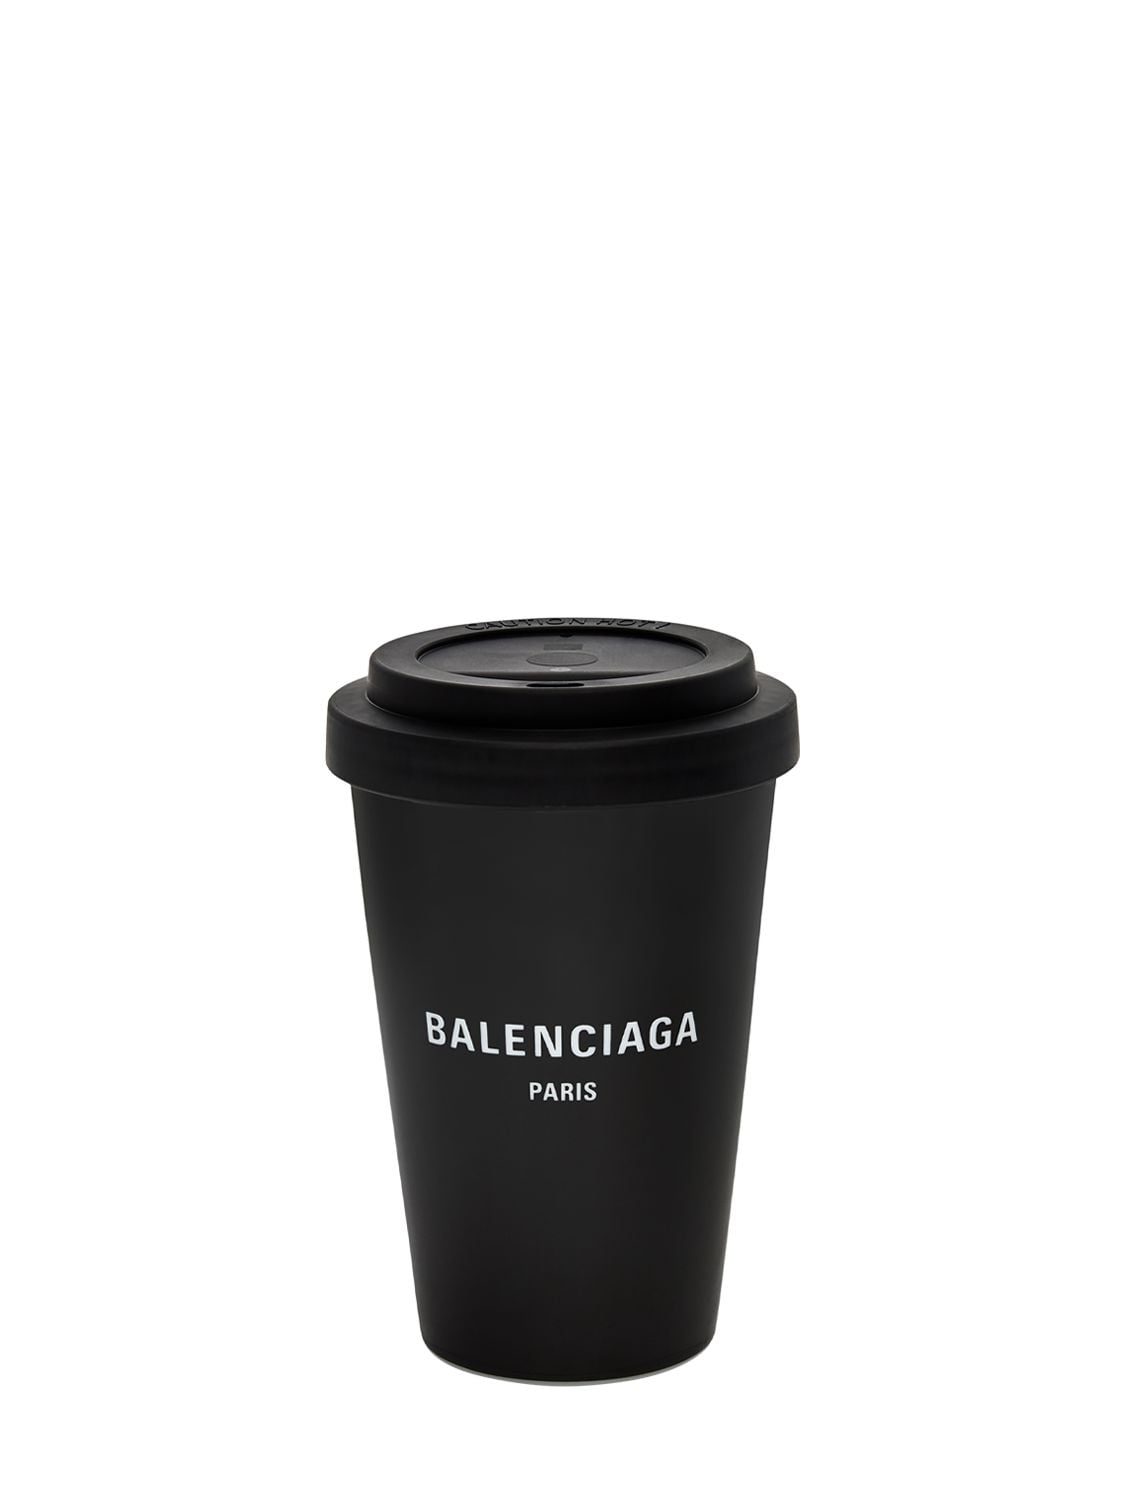 Balenciaga Paris Porcelain Coffee Cup In Black